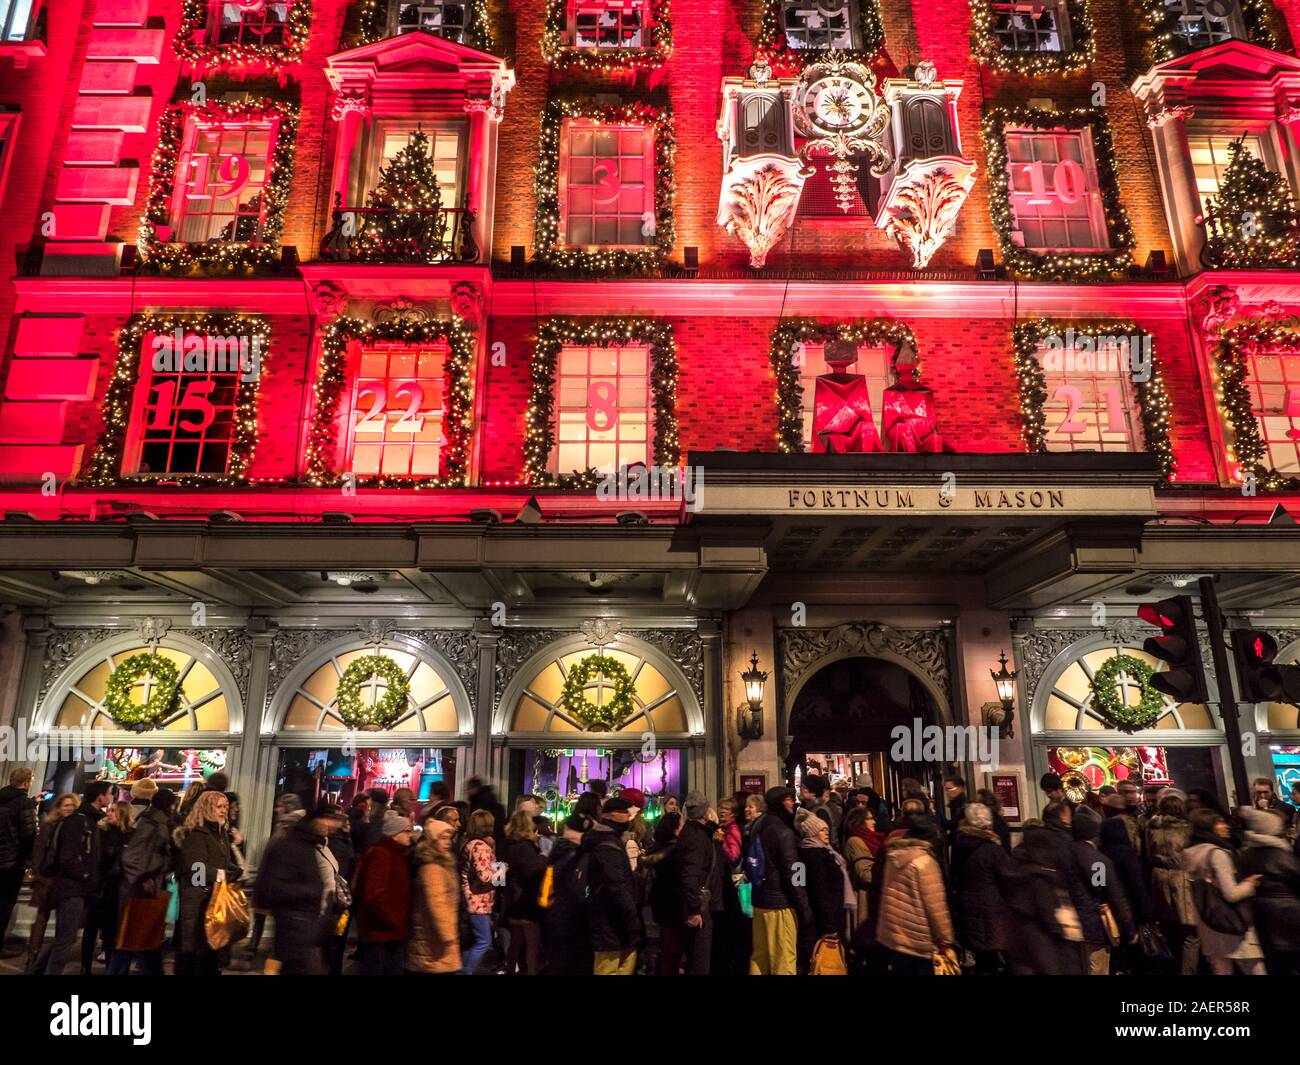 Fortnum & Mason Noël department store façade, avec un calendrier de l'avent rouge nuit à thème très occupé avec des files d'attente et de la foule des acheteurs de Noël Piccadilly Londres UK 2019 Banque D'Images